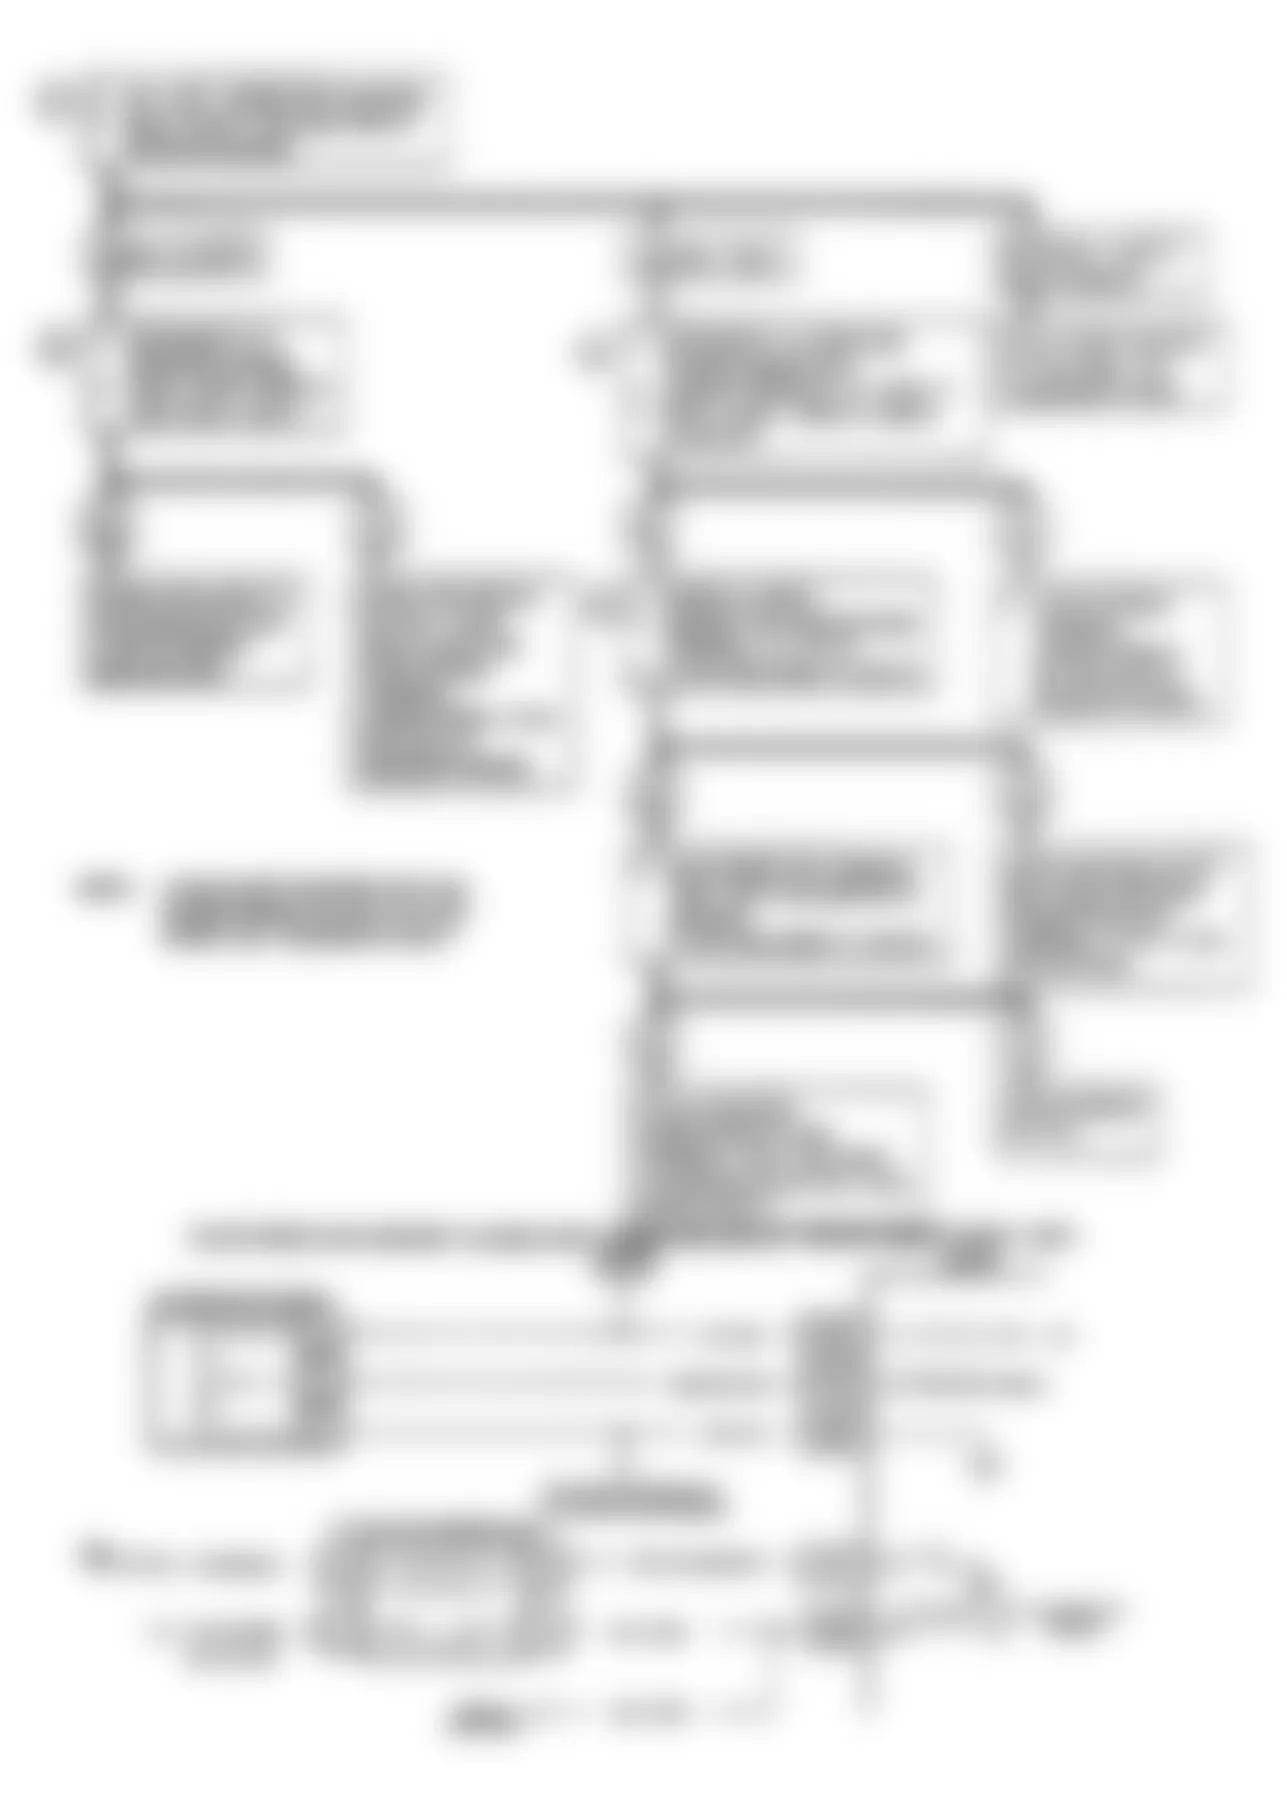 Buick Regal Gran Sport 1990 - Component Locations -  Code 66: A/C Pressure Sensor Schematic & Flow Chart (J Body)